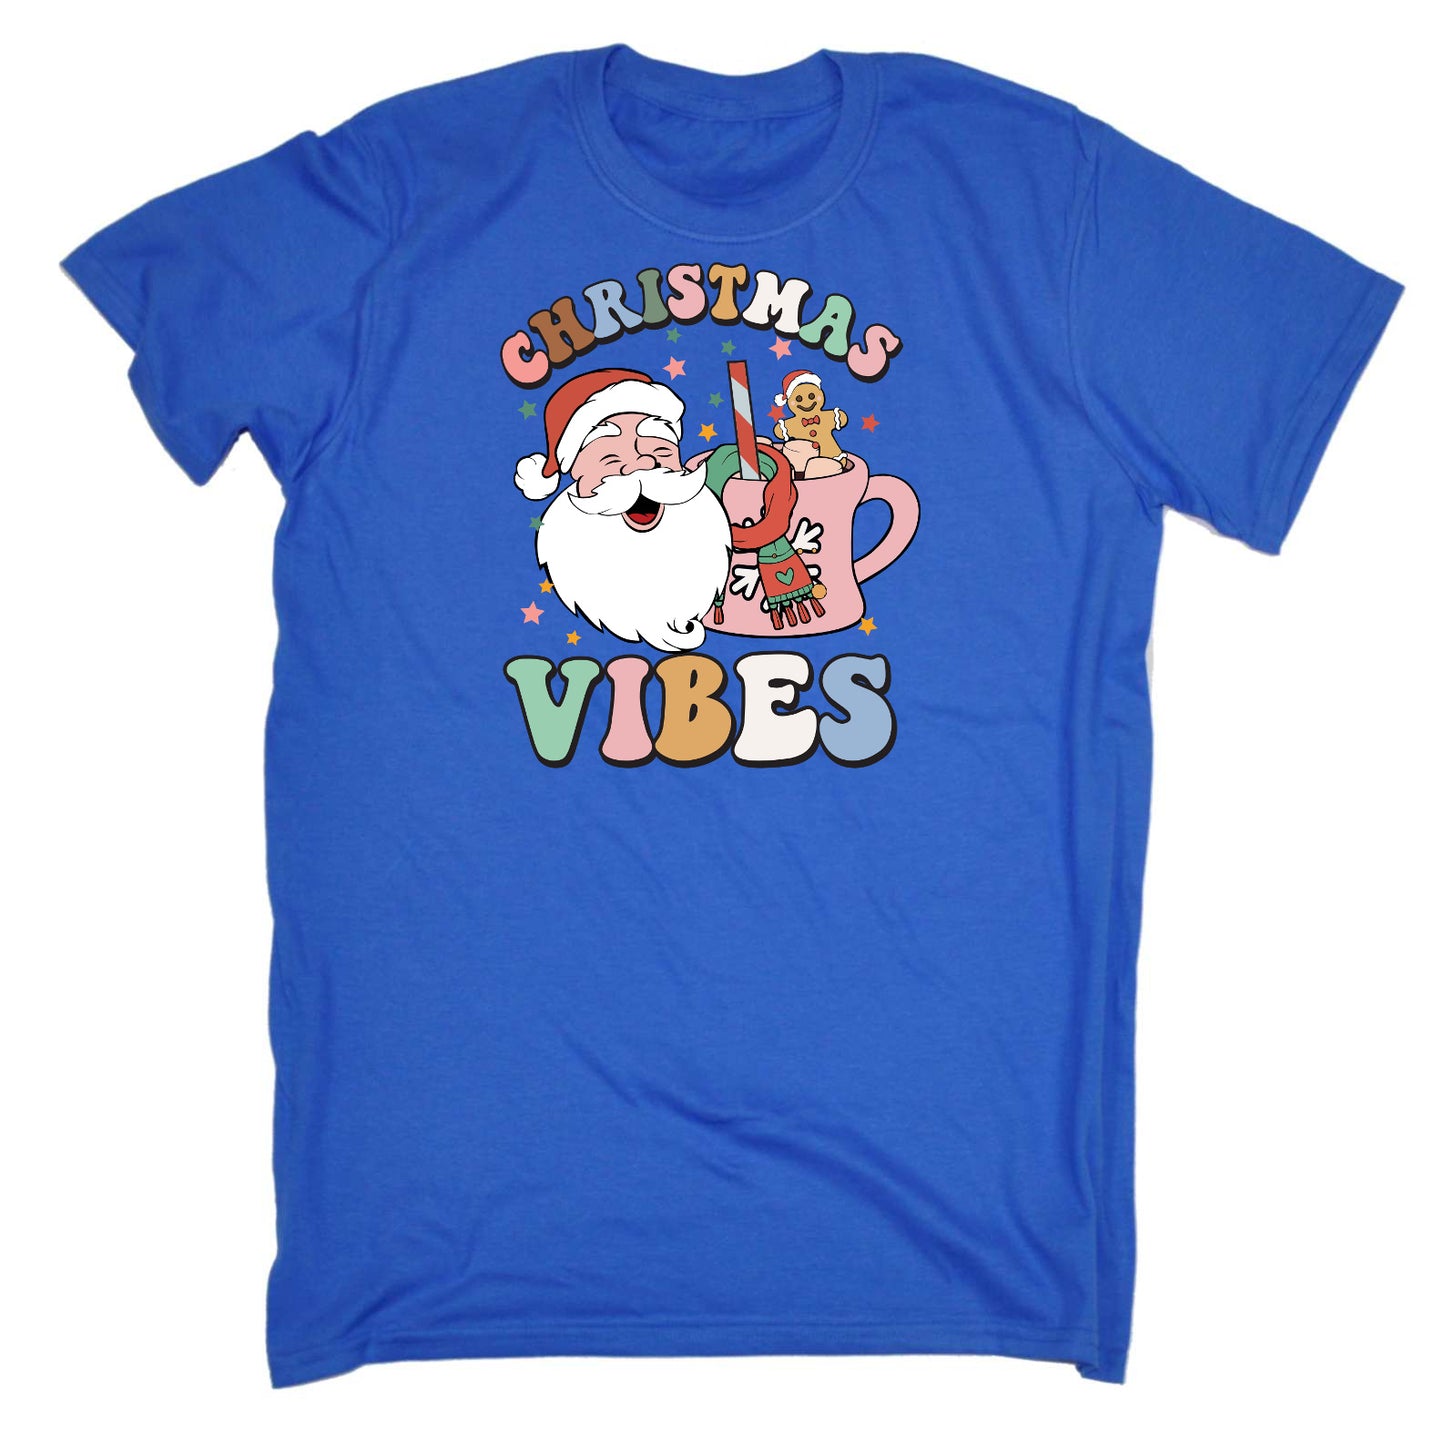 Retro Christmas Vibes - Mens Funny T-Shirt Tshirts